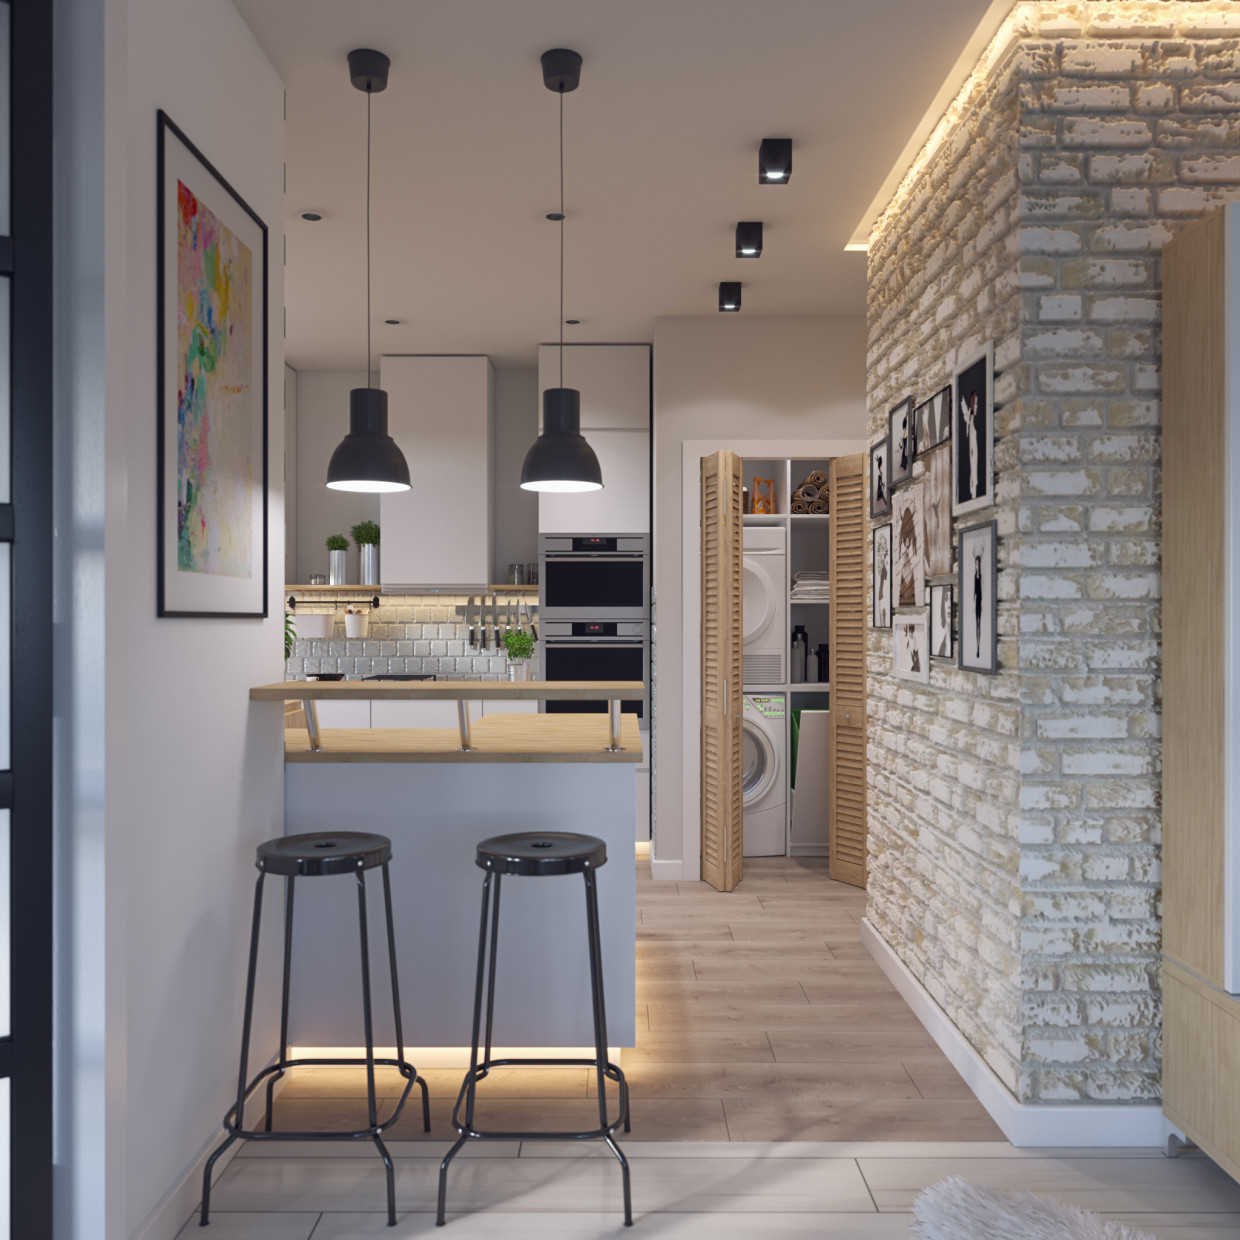 Visualiser le Studio-cuisine avec des meubles d’IKEA dans 3d max corona render image